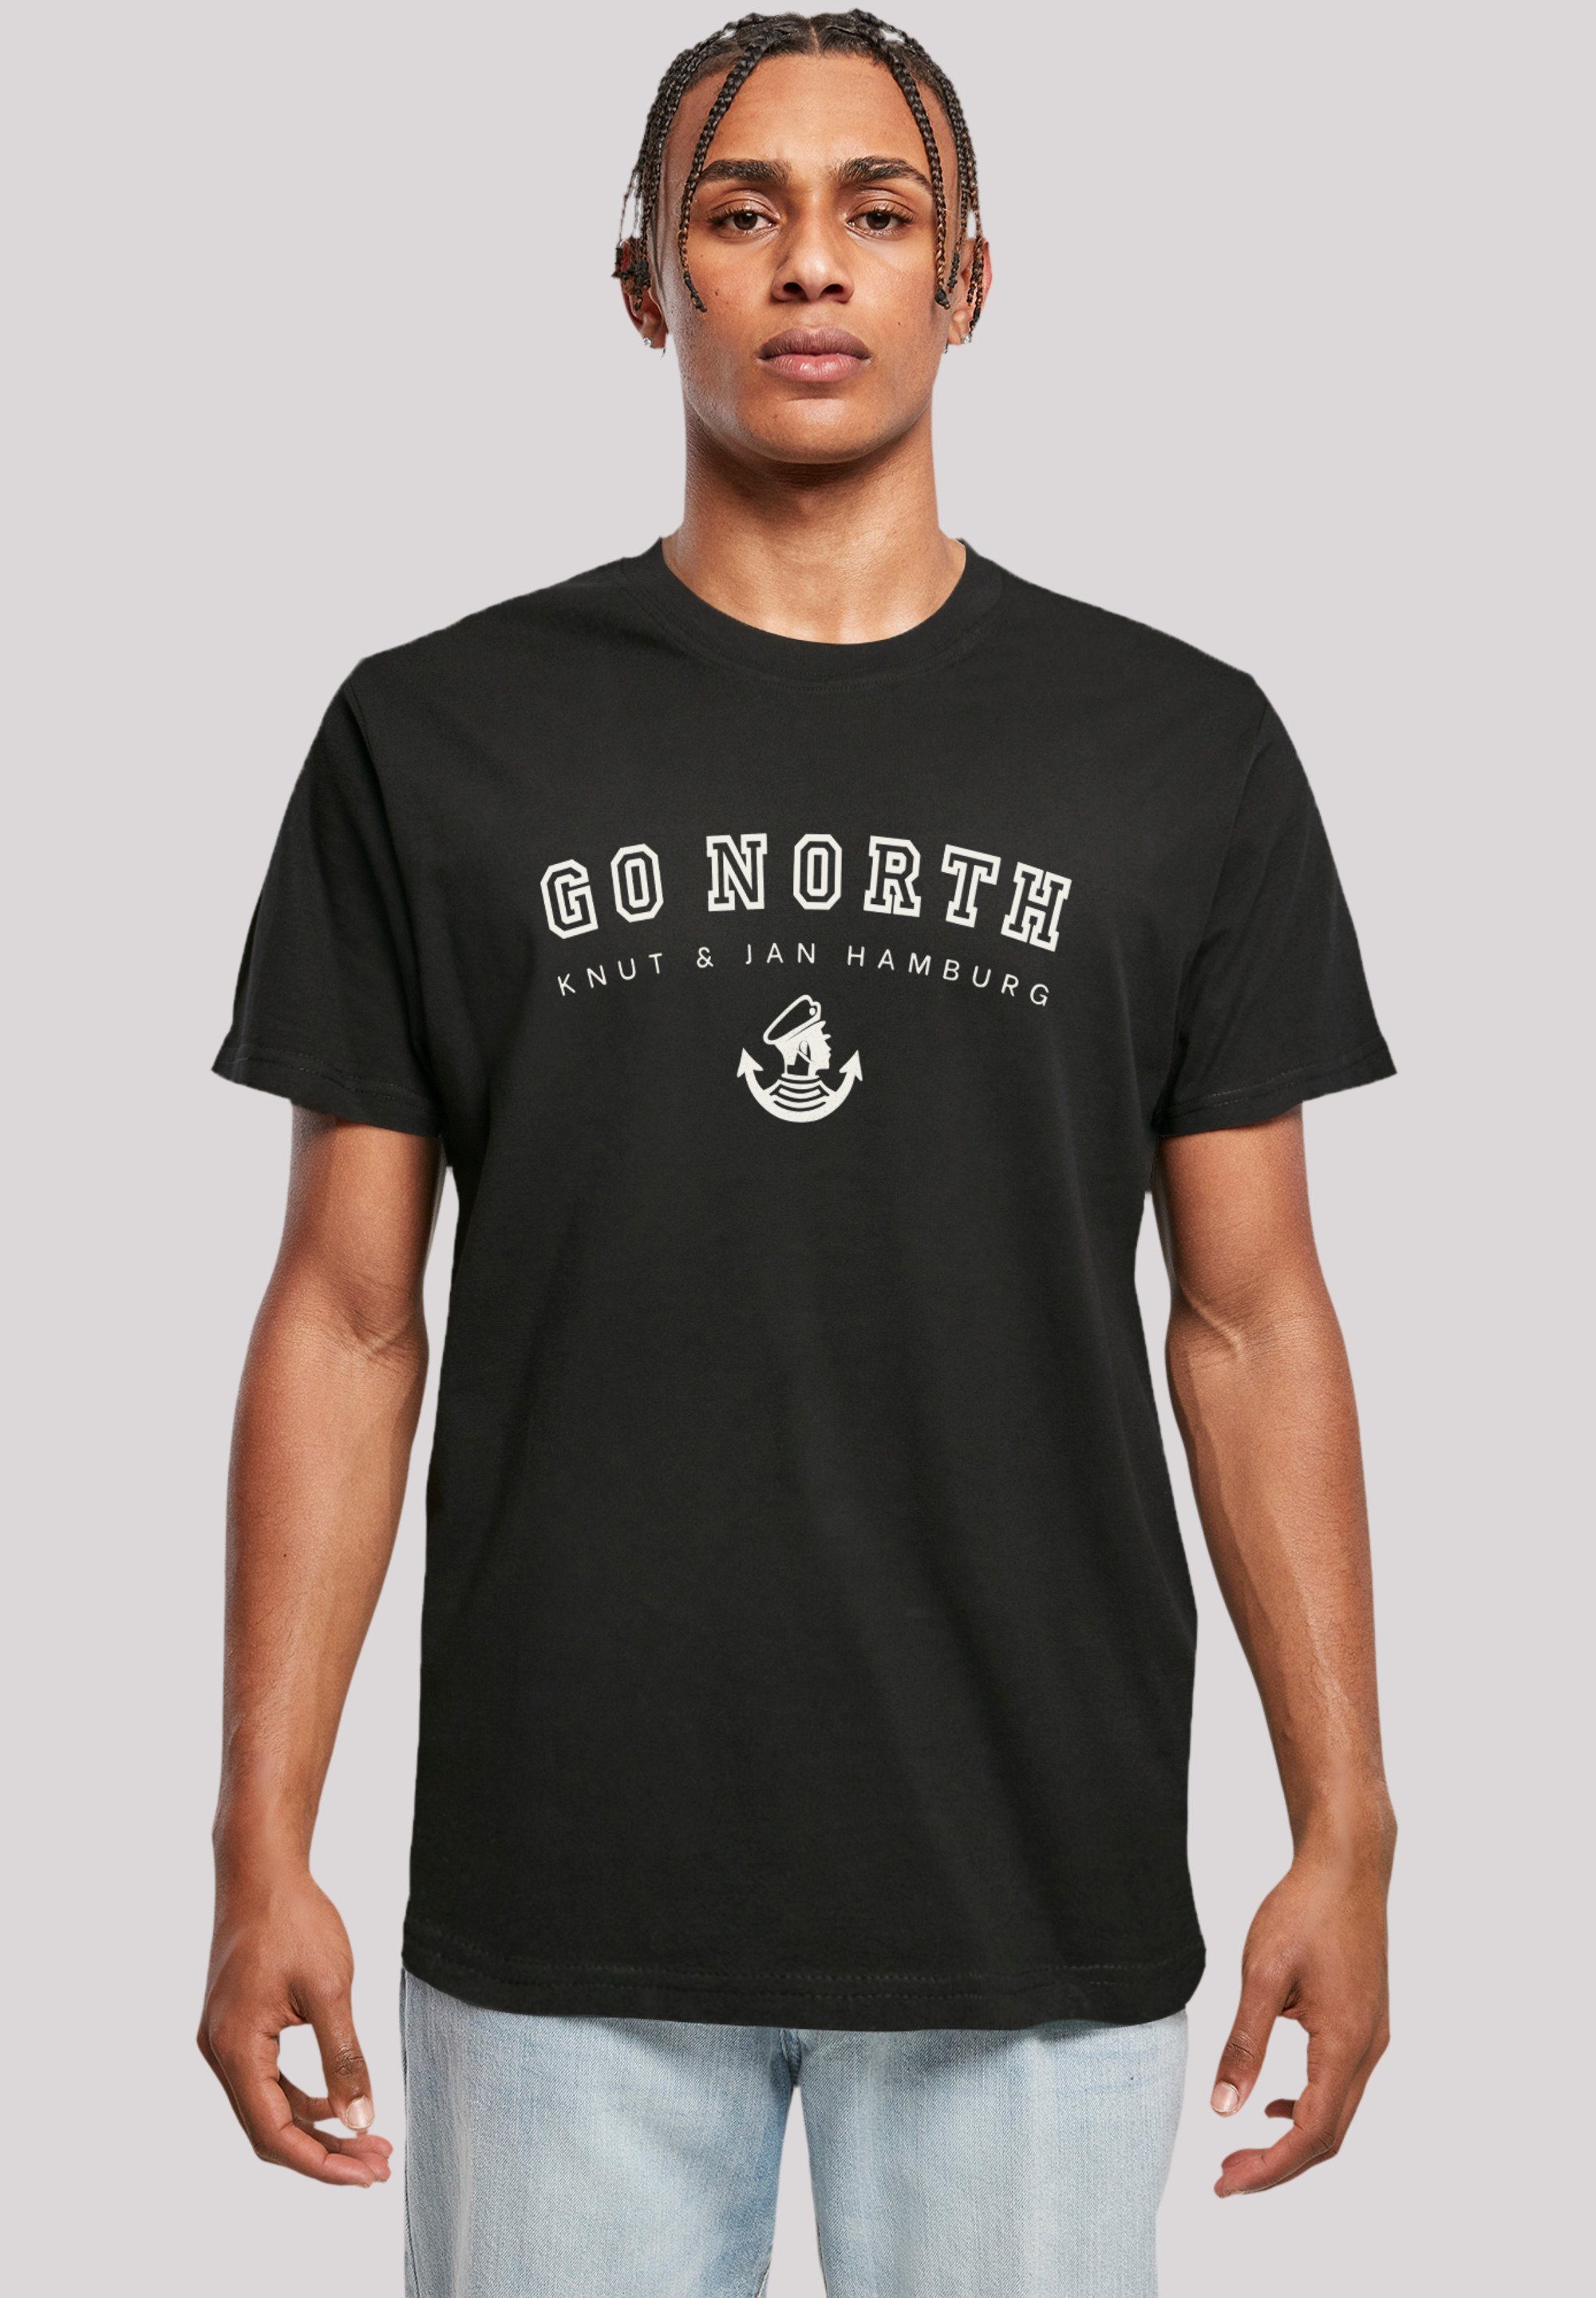 North Tragekomfort hohem Go Baumwollstoff Sehr Print, weicher T-Shirt F4NT4STIC mit